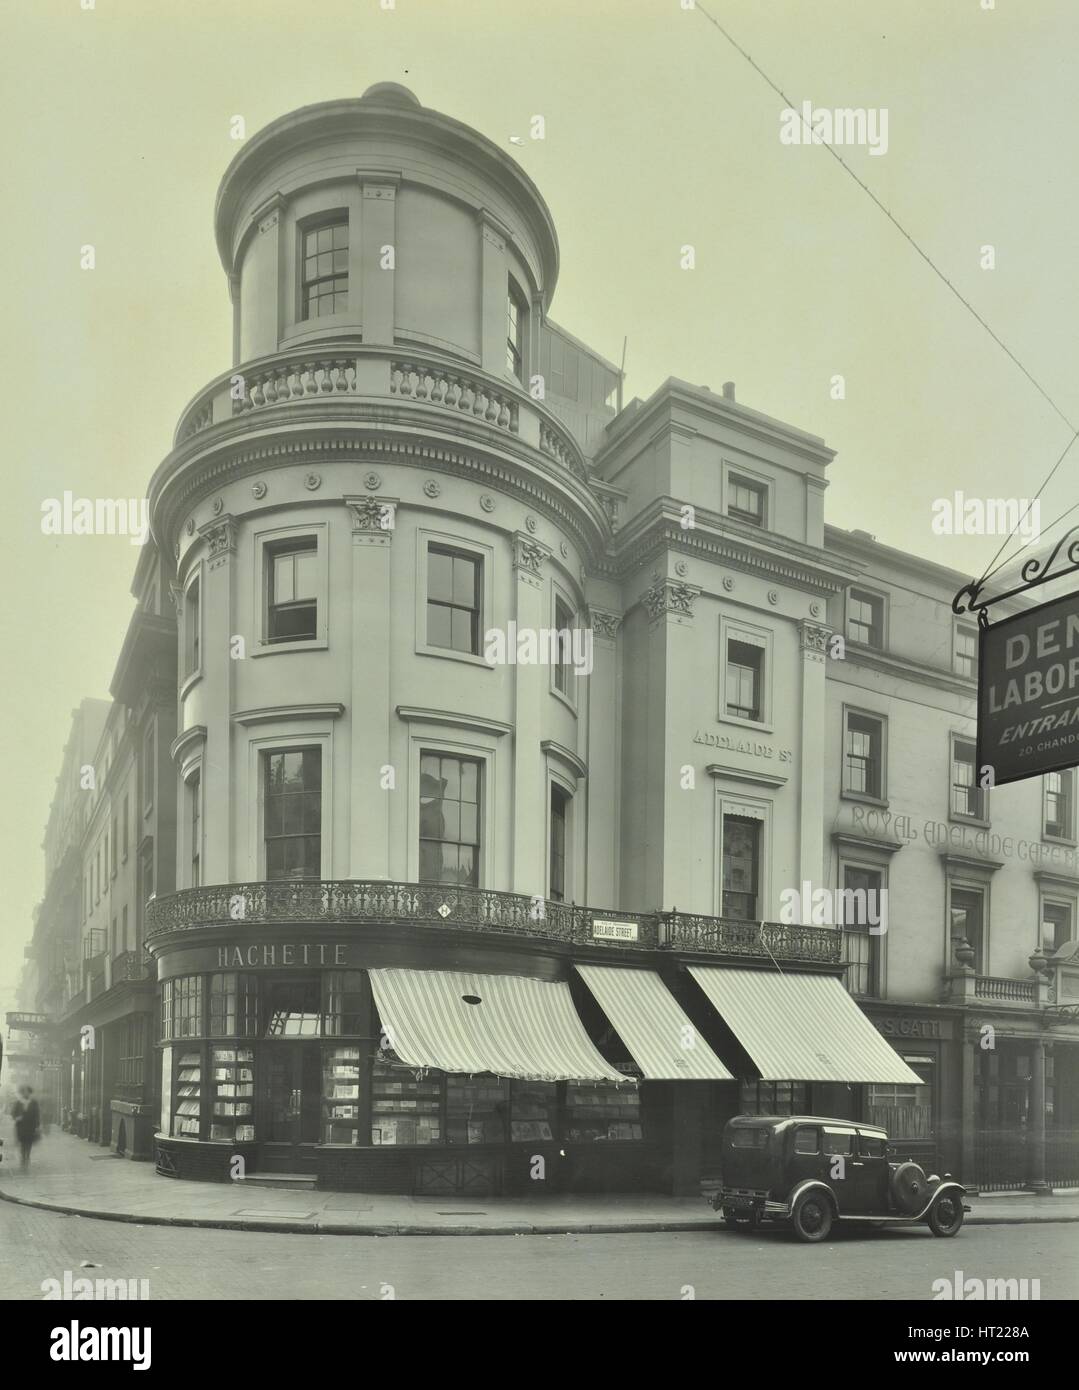 Hachette Buchhandlung an der Ecke King William Street, London, 1930. Künstler: unbekannt. Stockfoto